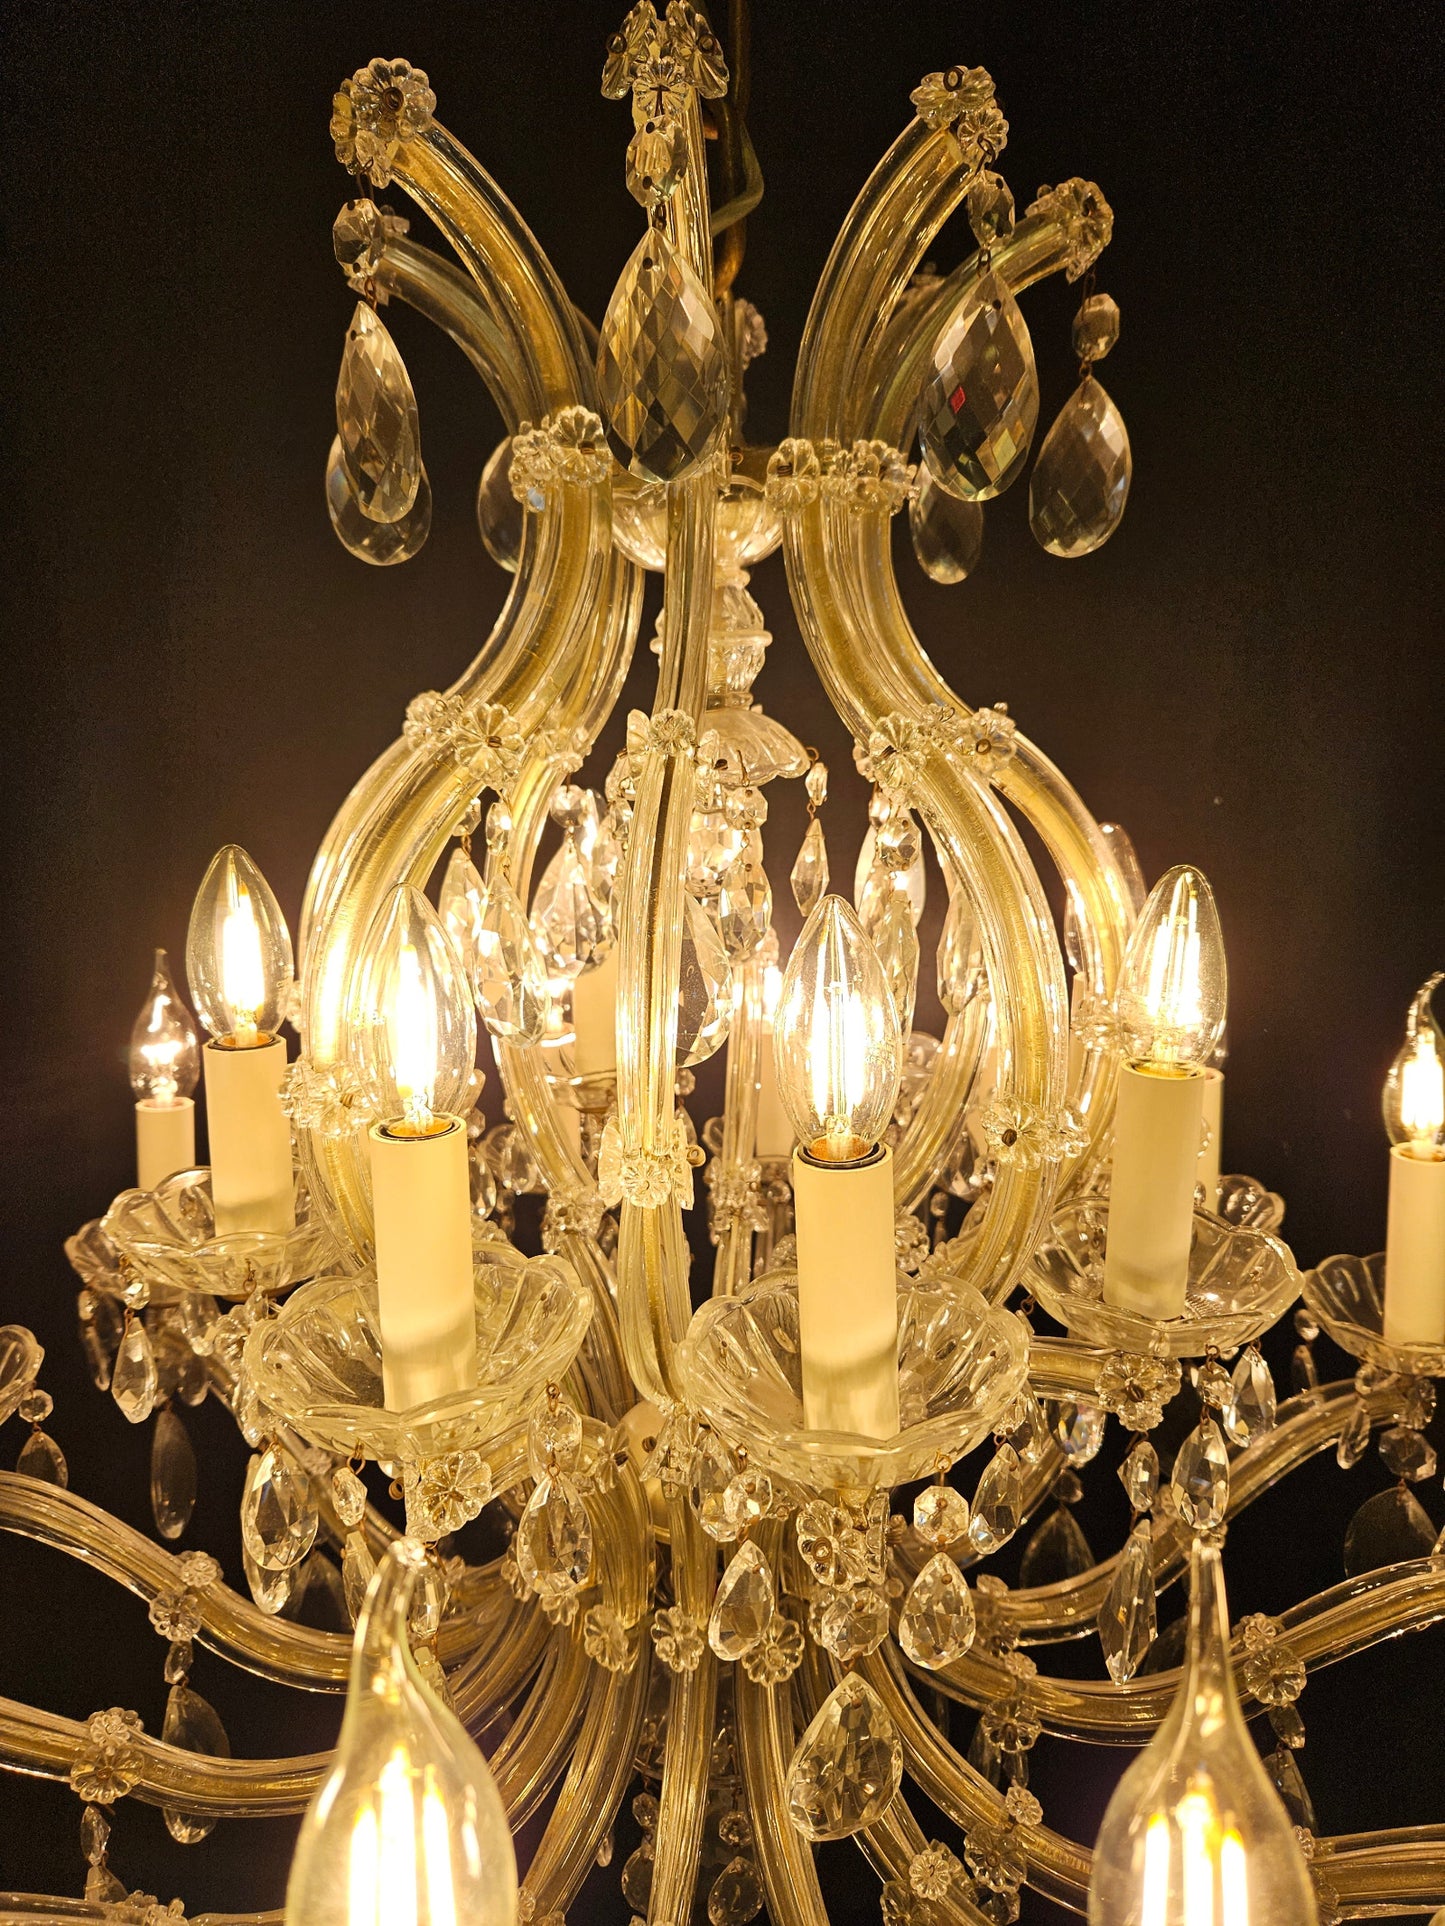 view of top half of chandelier lit up